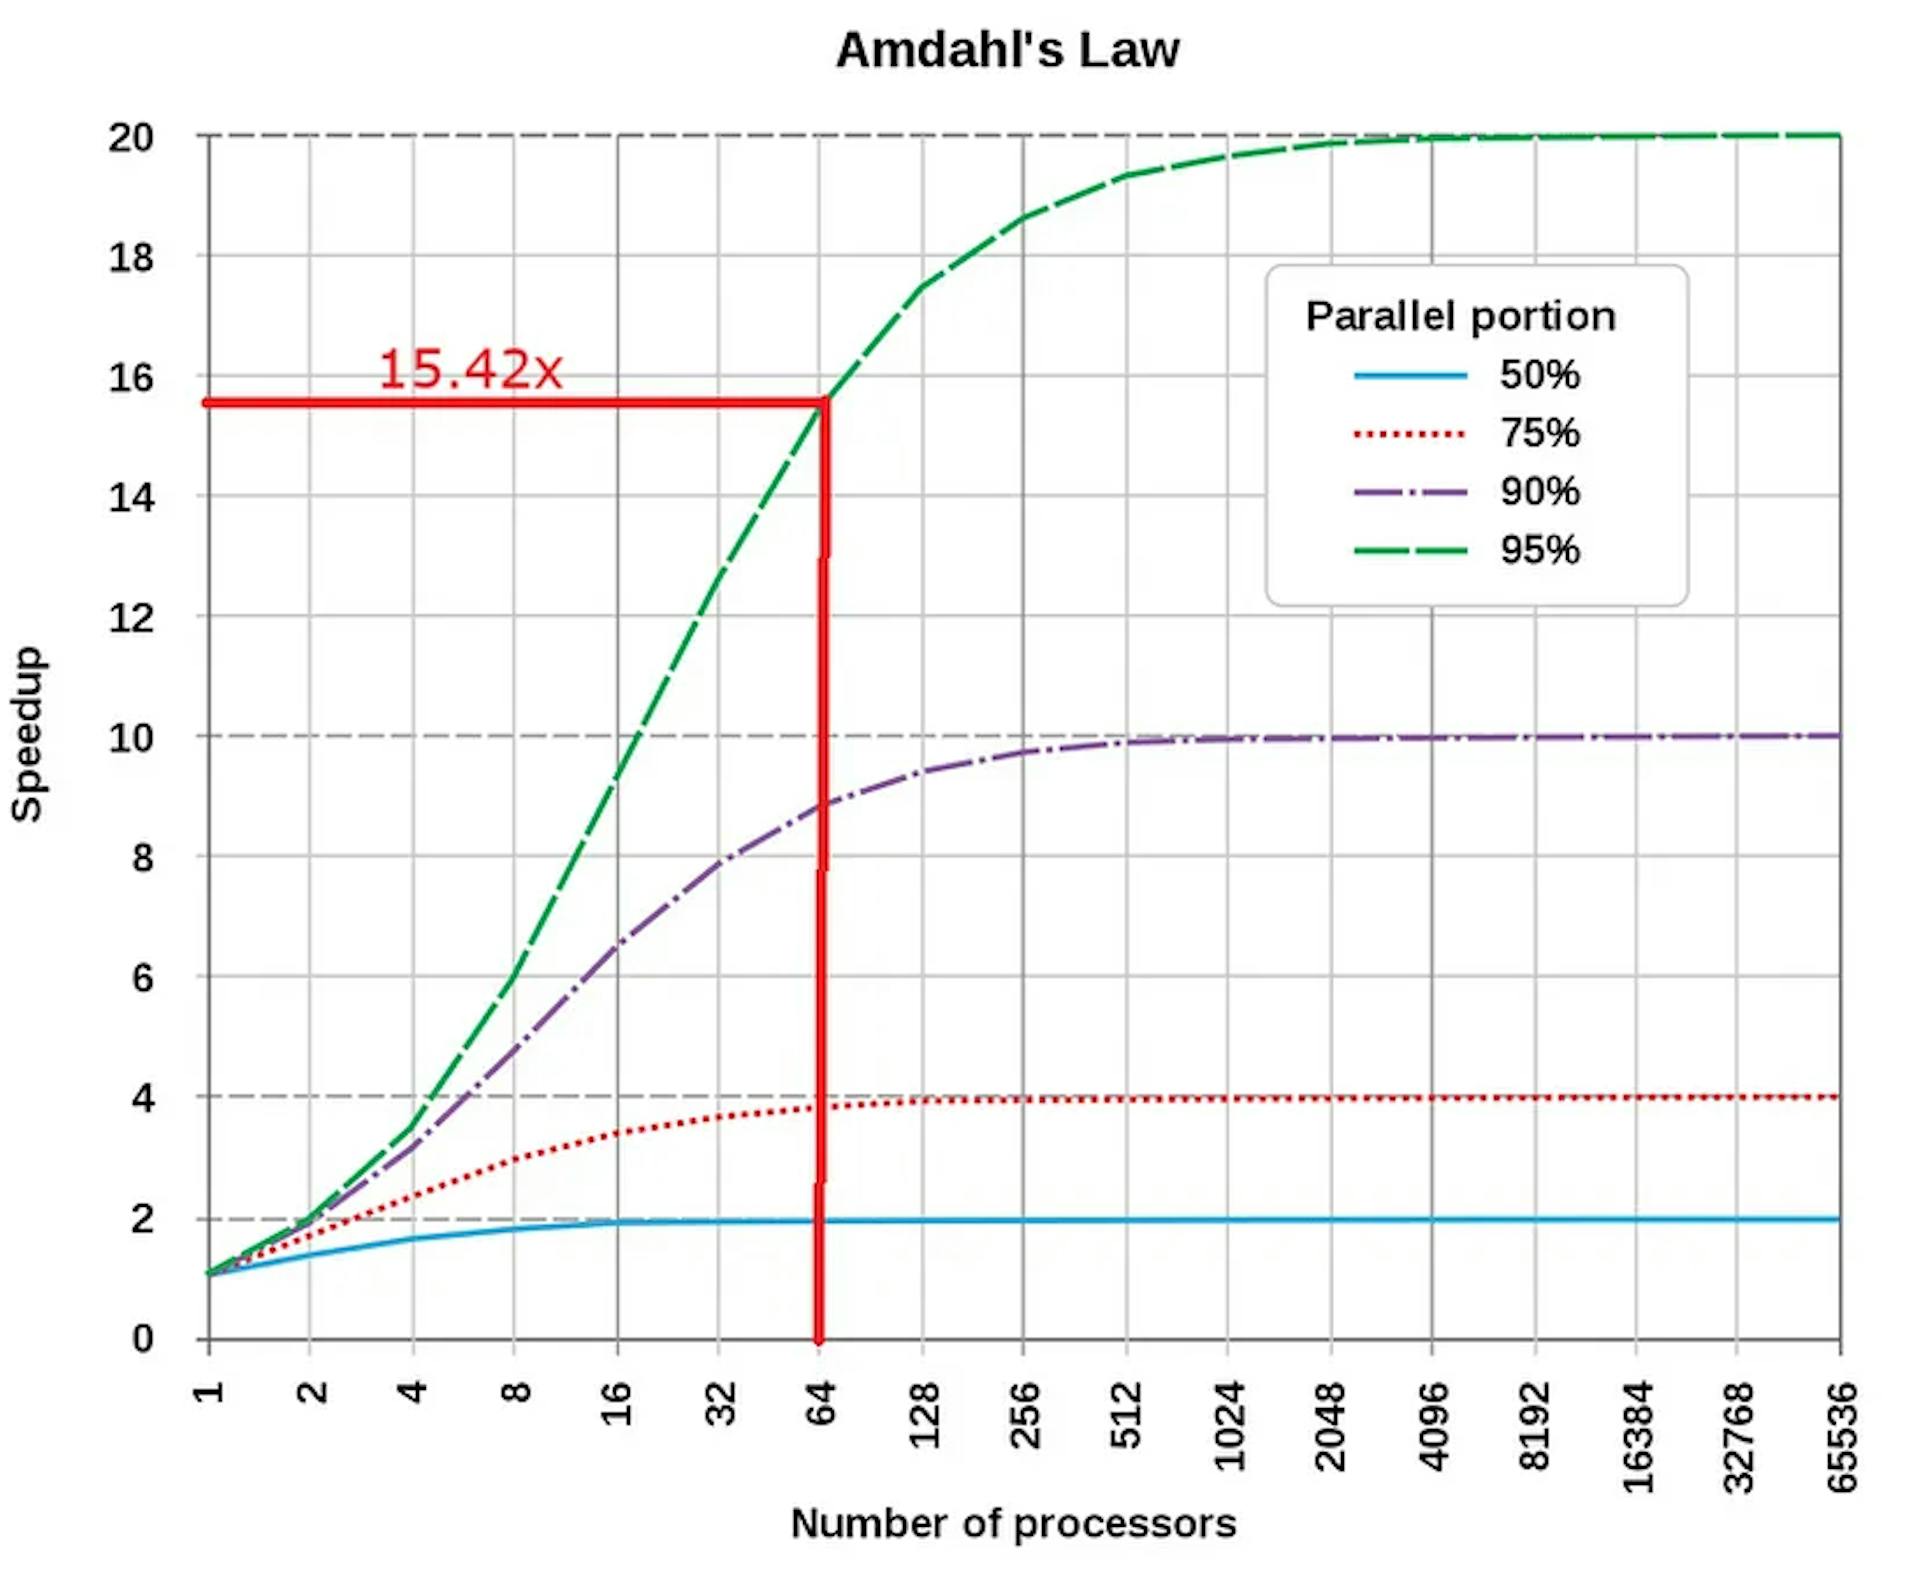 원본 출처: 양자 가속기 스택: 연구 로드맵 - ResearchGate의 과학적 수치. 출처: https://www.researchgate.net/Figure/The-Amdahl-and-Gustafson-Barsis-law_fig3_349026057